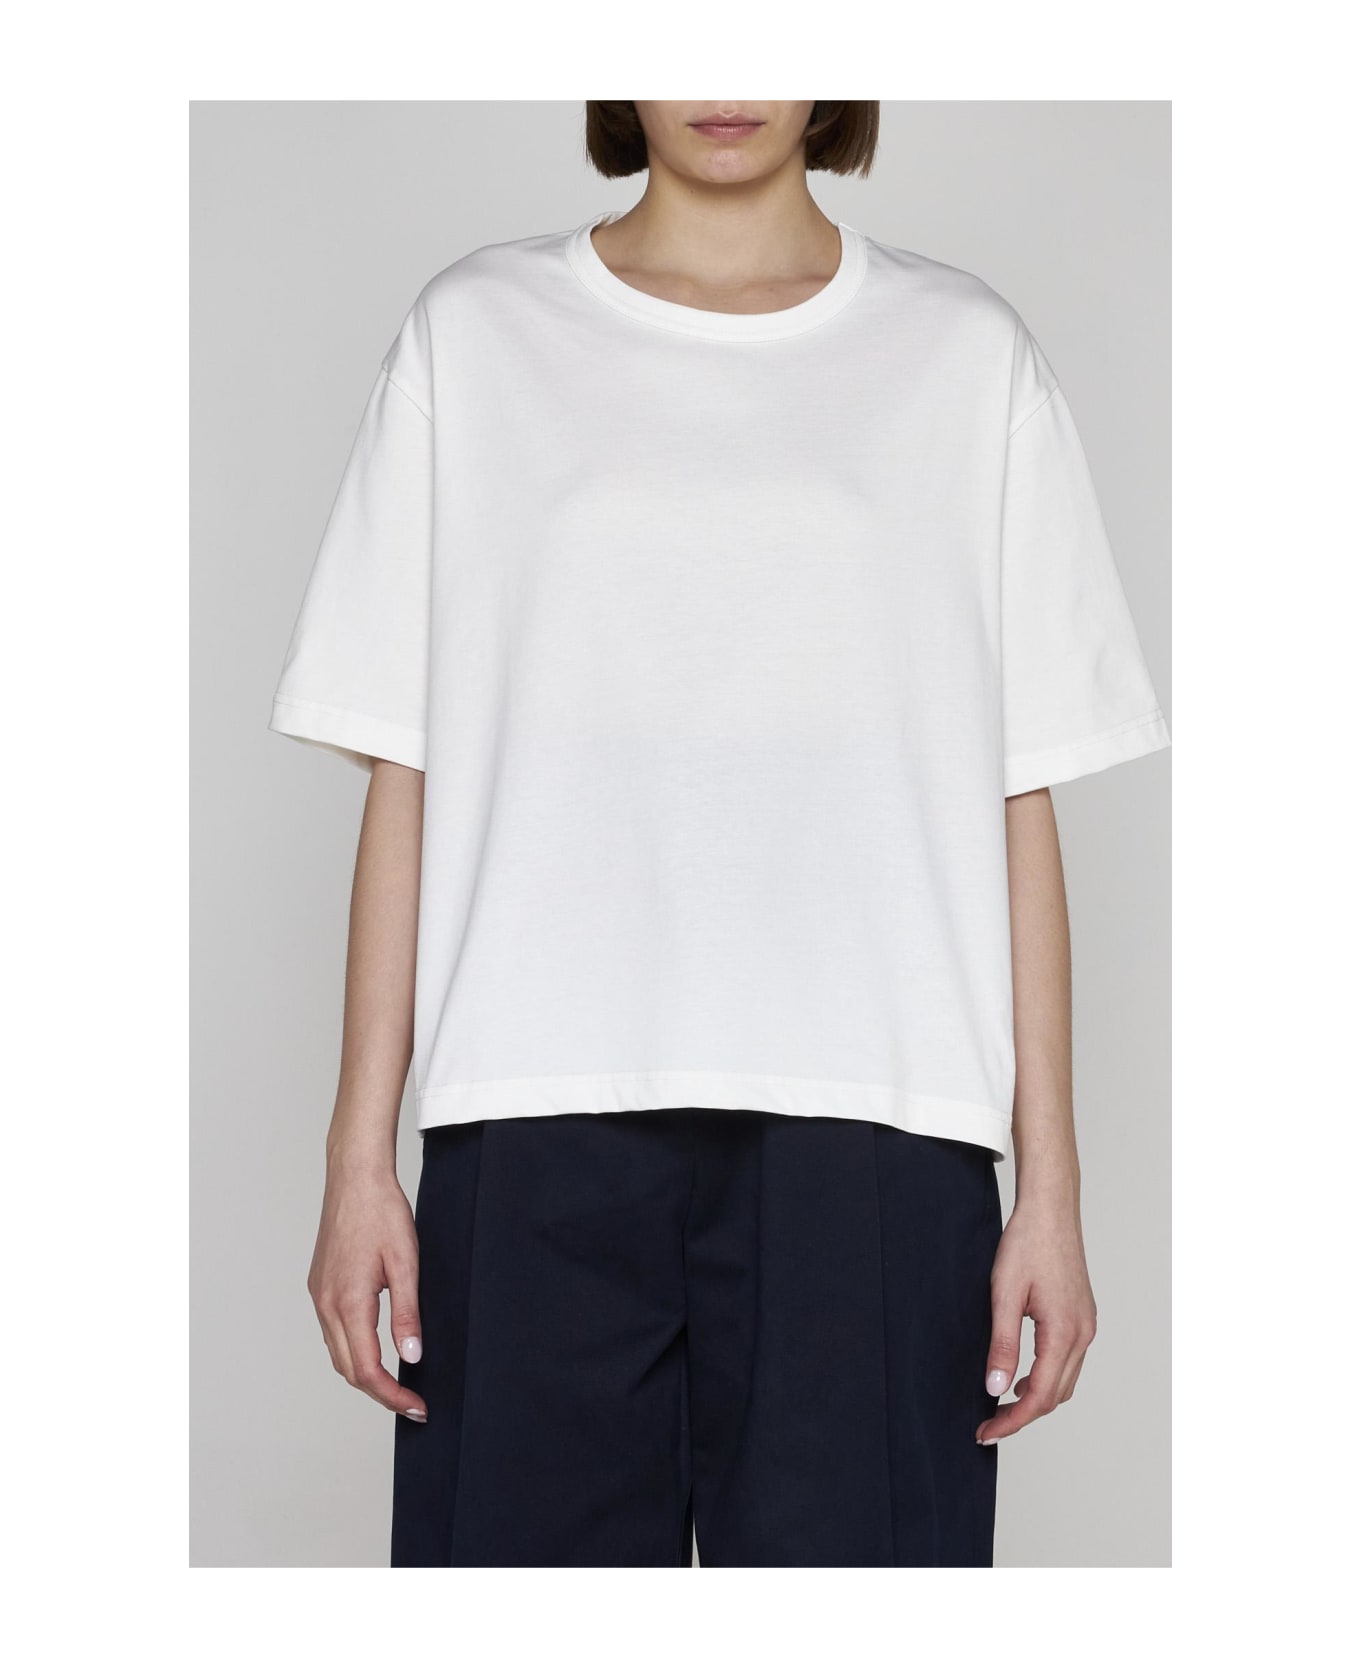 Studio Nicholson Lees Cotton T-shirt - White Tシャツ